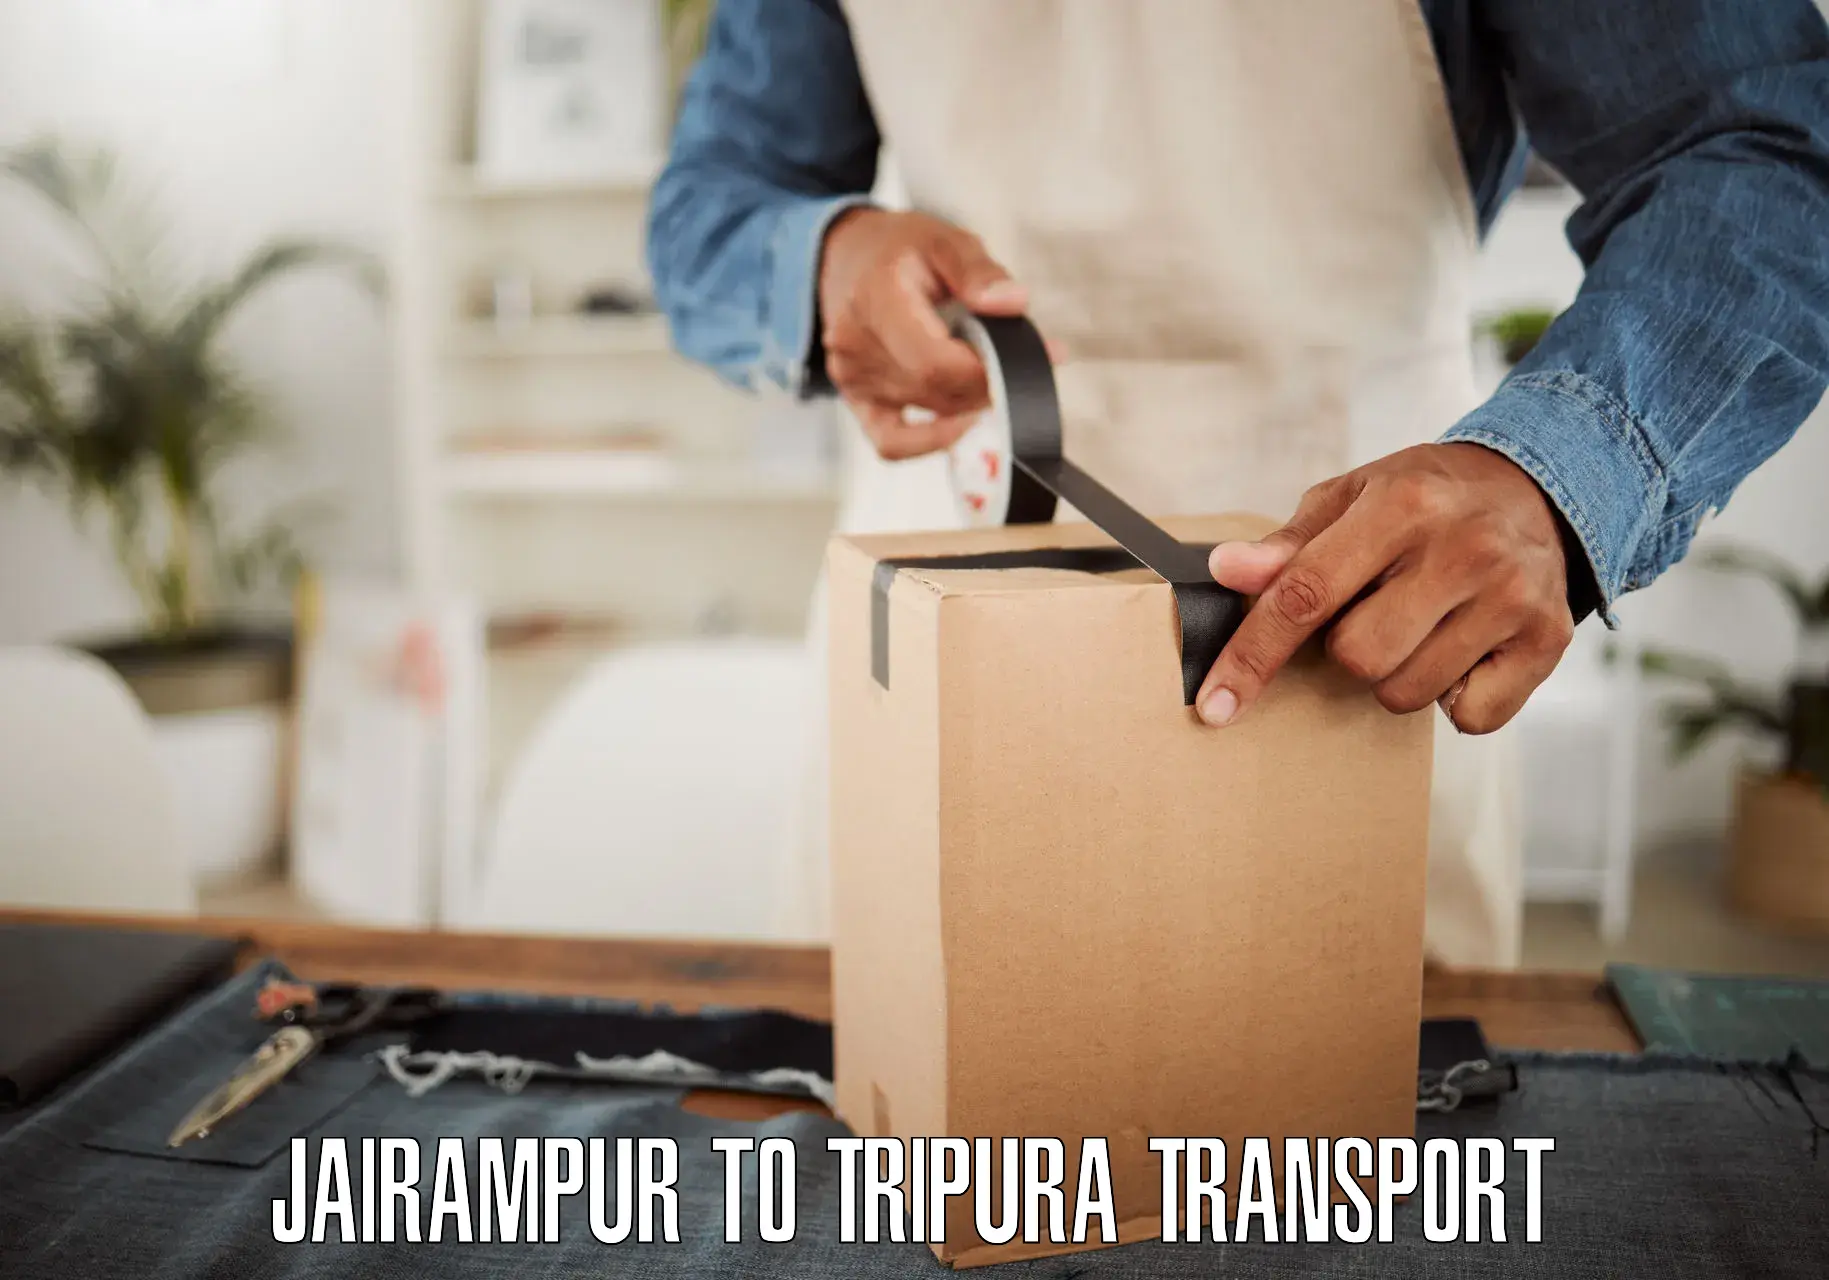 Truck transport companies in India Jairampur to Udaipur Tripura